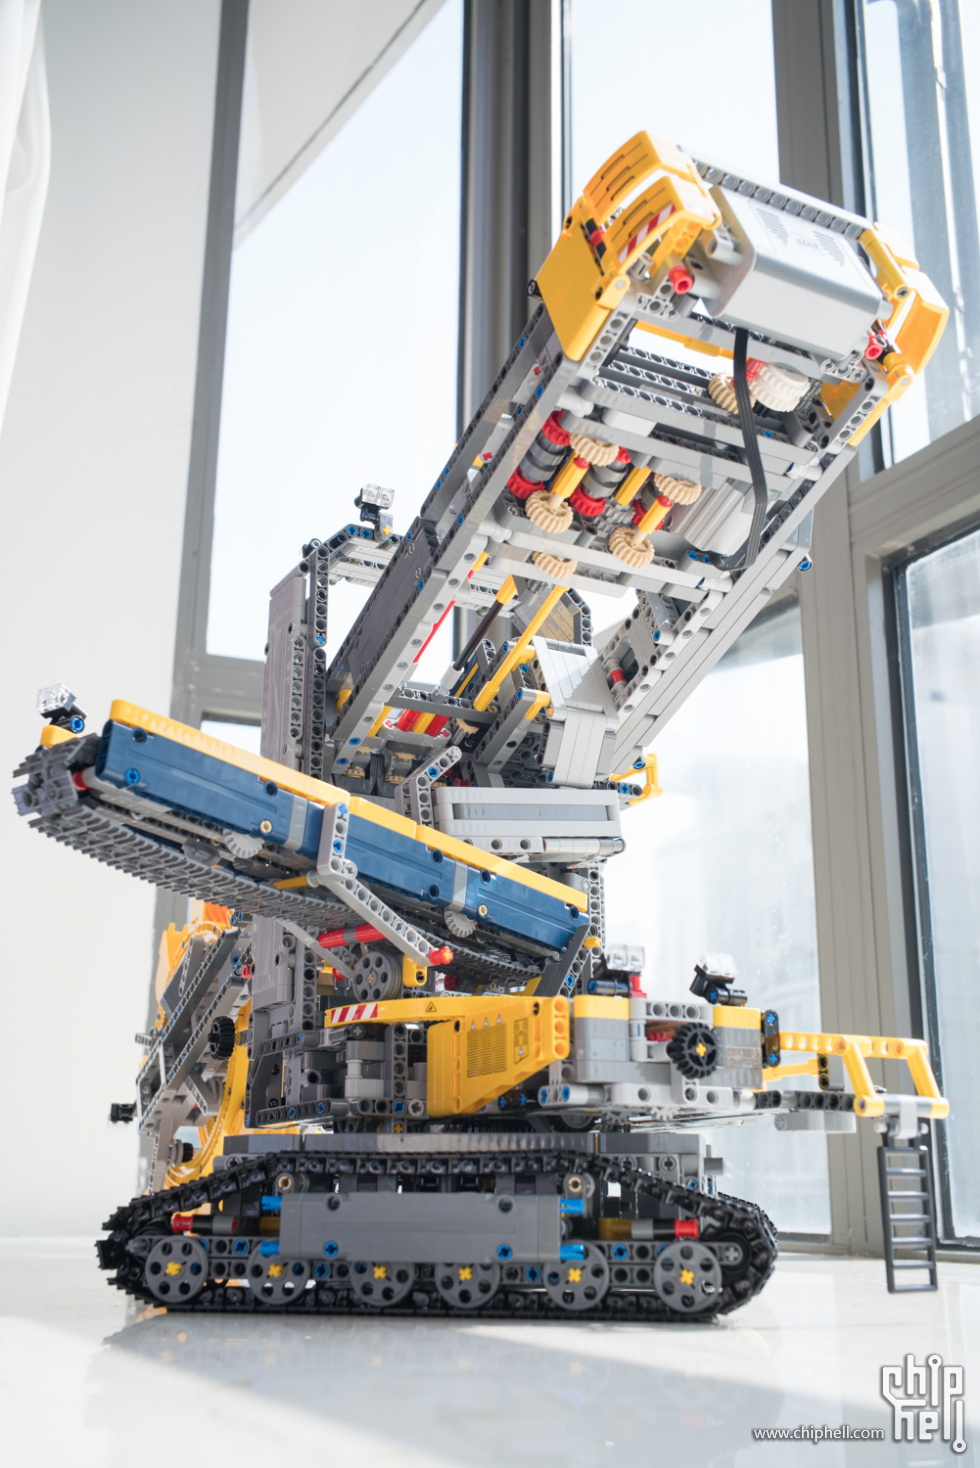 巨兽贺新年lego科技旗舰42055斗轮式挖掘机